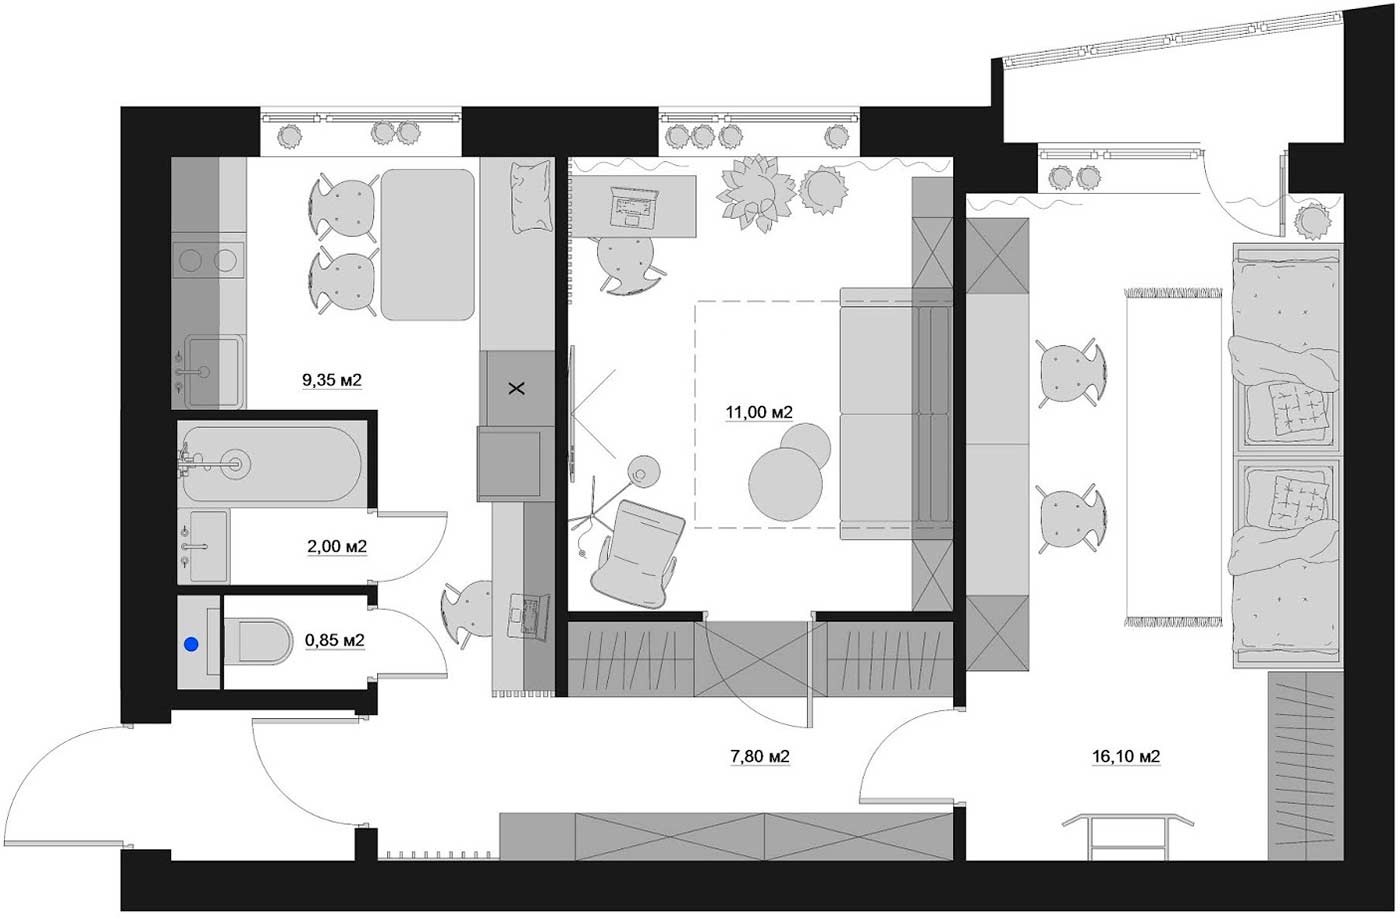 Bạn có thể tham khảo bản vẽ kế hoạch thiết kế sàn của căn hộ để hình dung về phòng ngủ “bí mật” này.